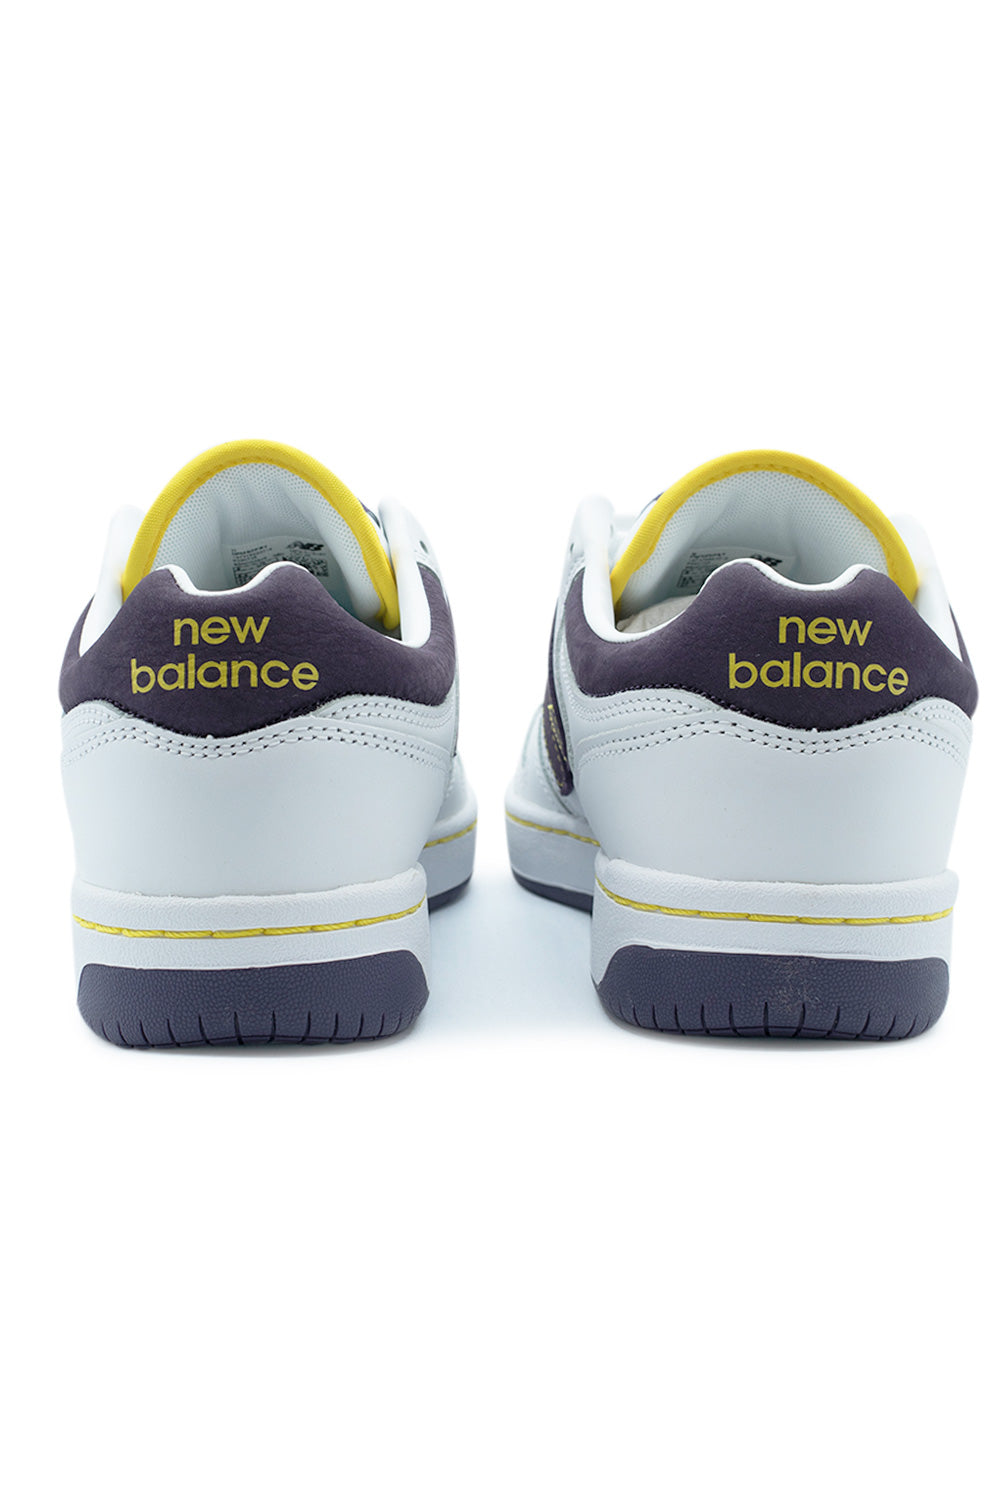 New Balance Numeric 480 Future Shoe White / Burgundy - BONKERS